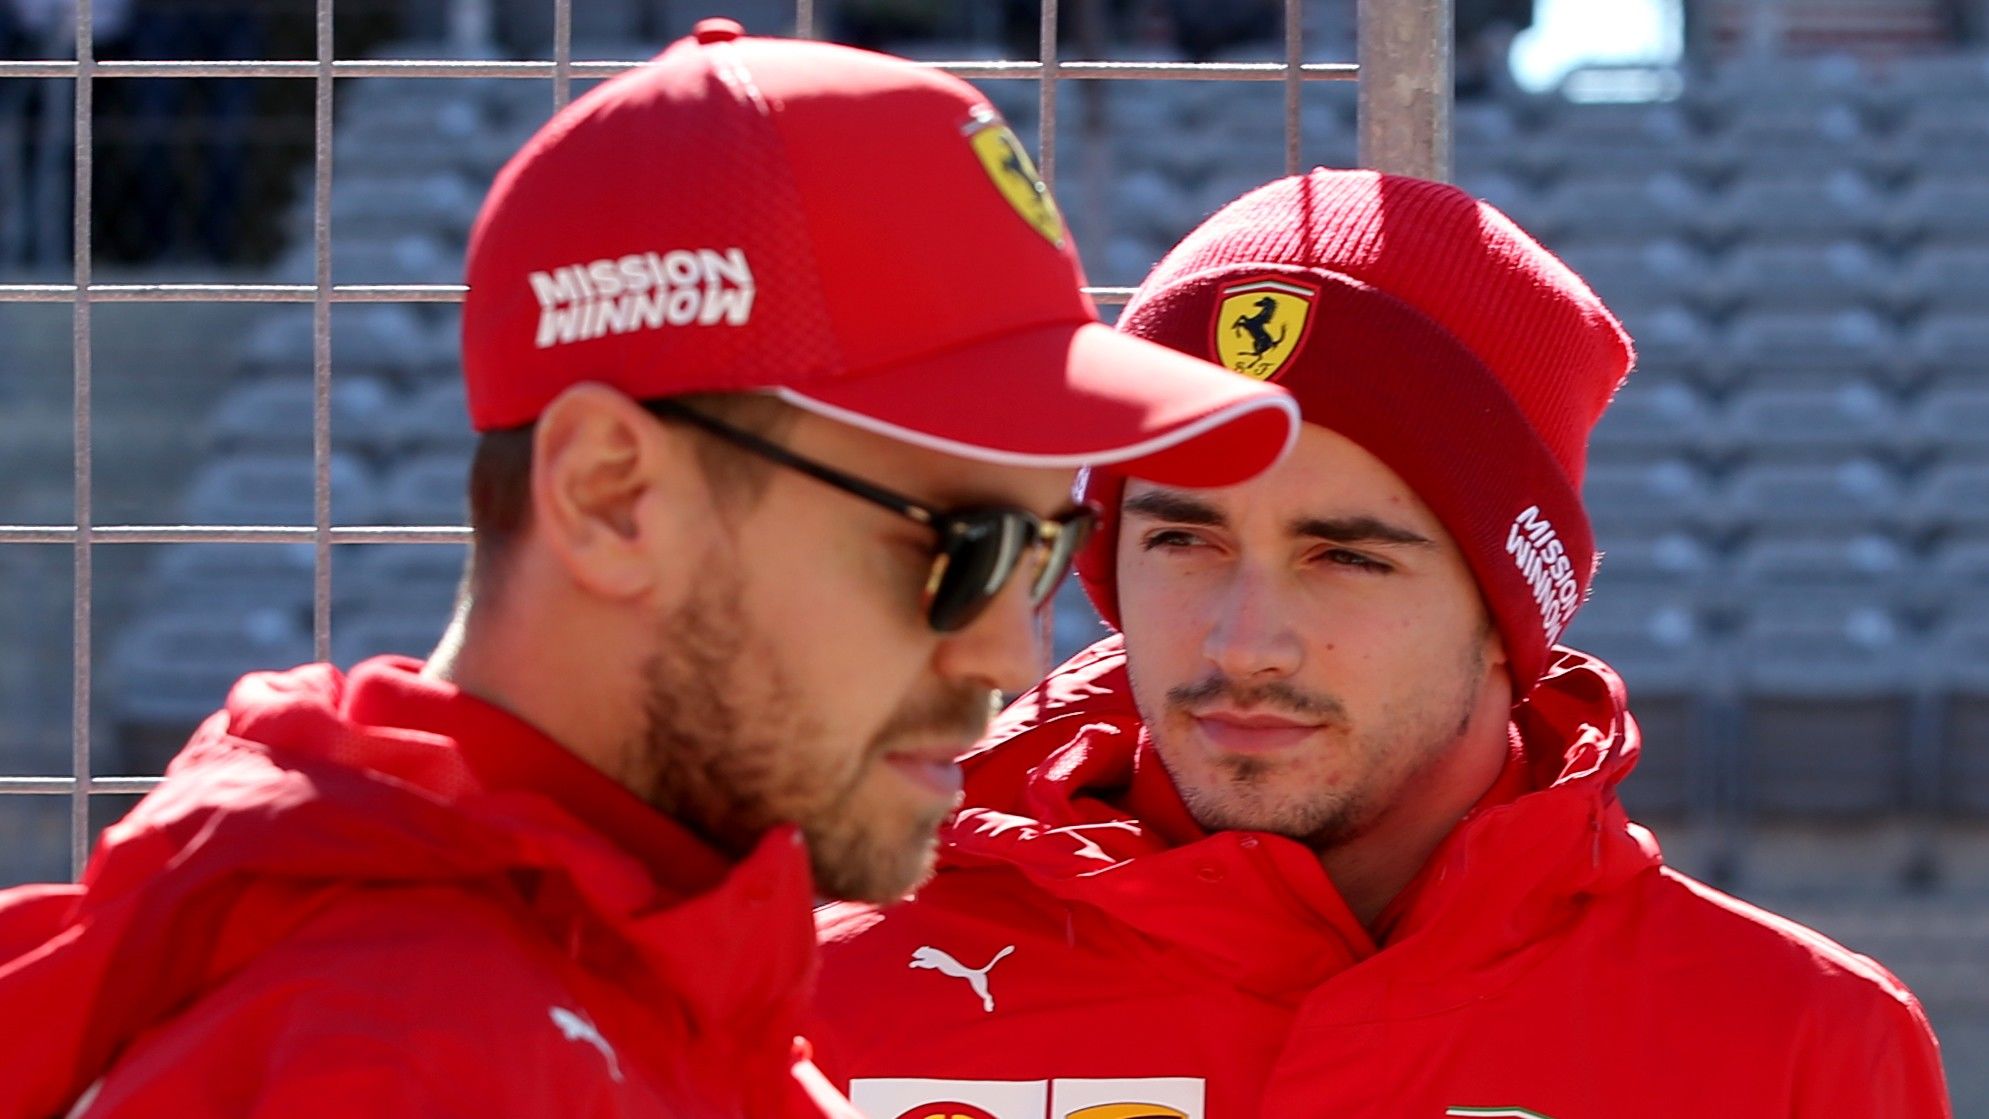 A Ferrarinál már örülnek neki, hogy Vettel és Leclerc kiütötték egymást